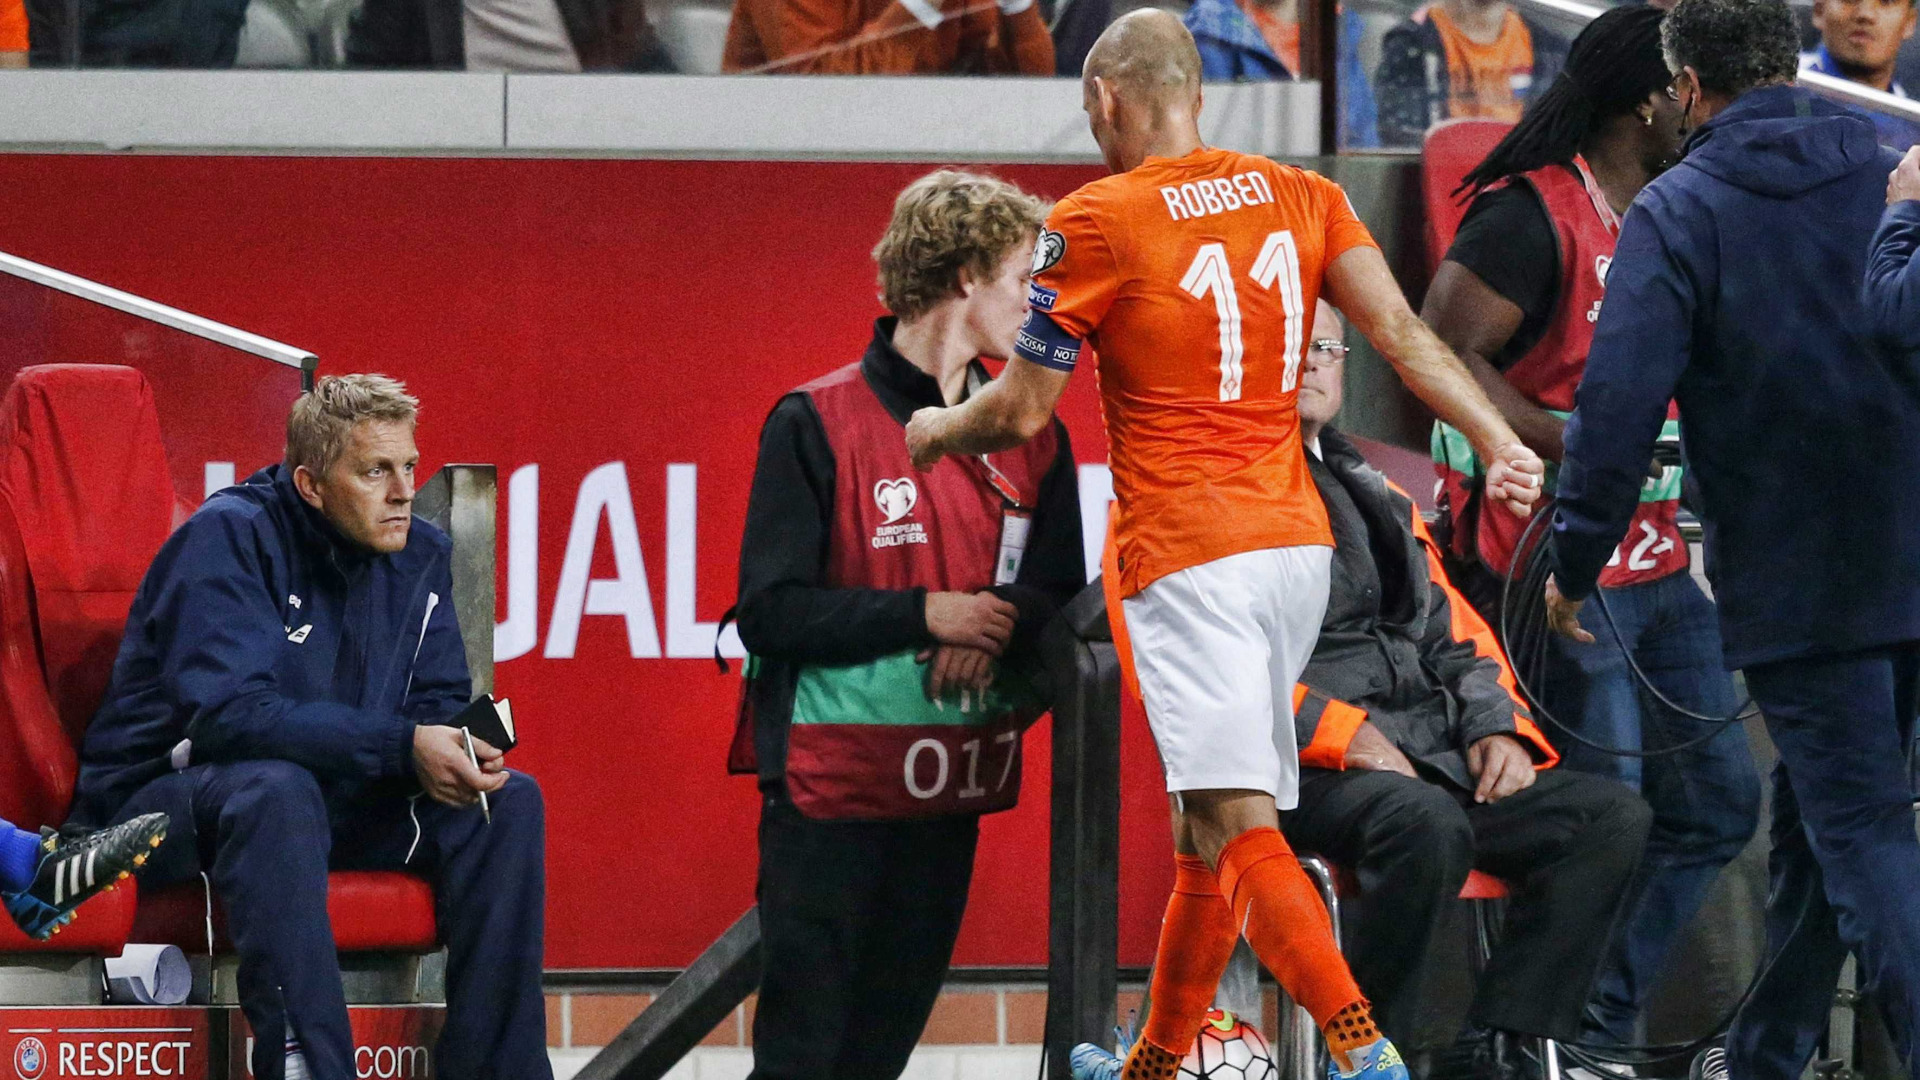 Ариен Робен прекрати кариерата си в националния отбор на Холандия